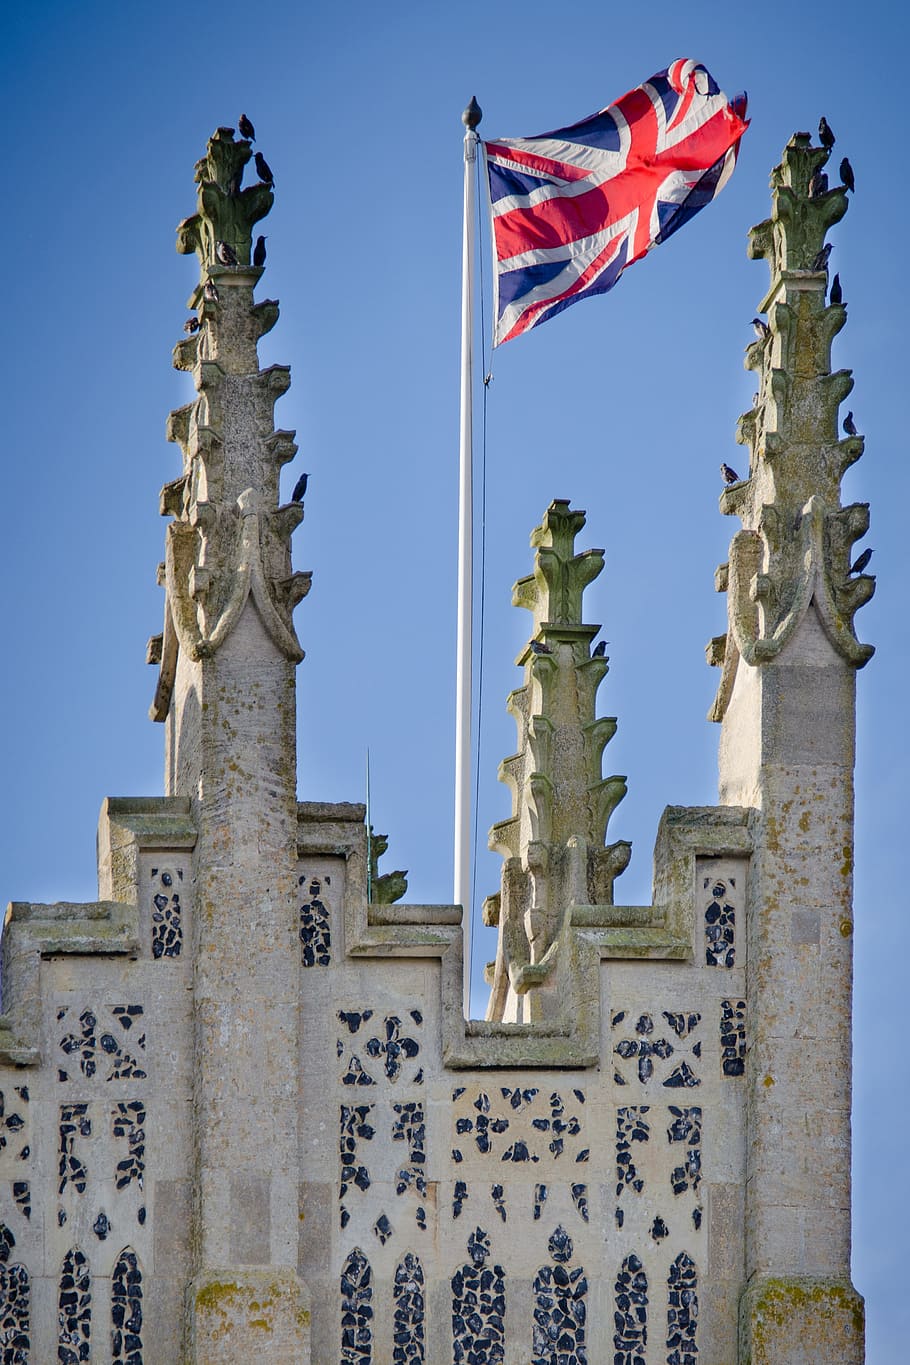 gris, hormigón, edificio, unión, jack, bandera, inglaterra, británico, reino unido, union jack